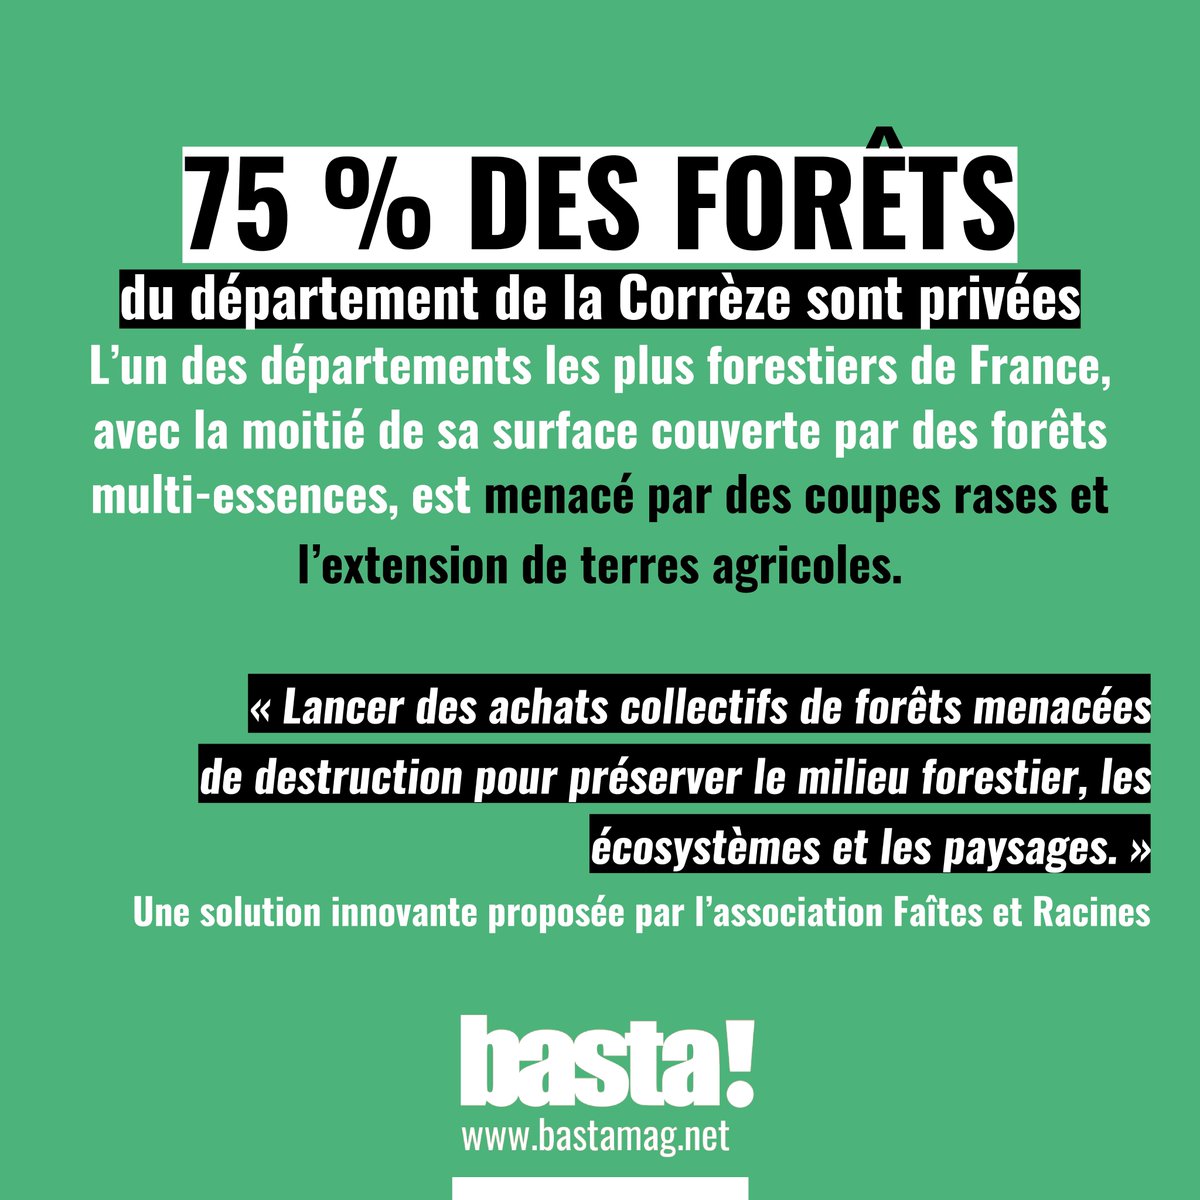 La Corrèze est l’un des départements les plus forestiers de France. Pour tenter de préserver le milieu forestier, l’association Faîte et Racines, créée en juillet 2018, propose de « lancer des achats collectifs de forêts menacées de destruction » grâce aux dons de particuliers.